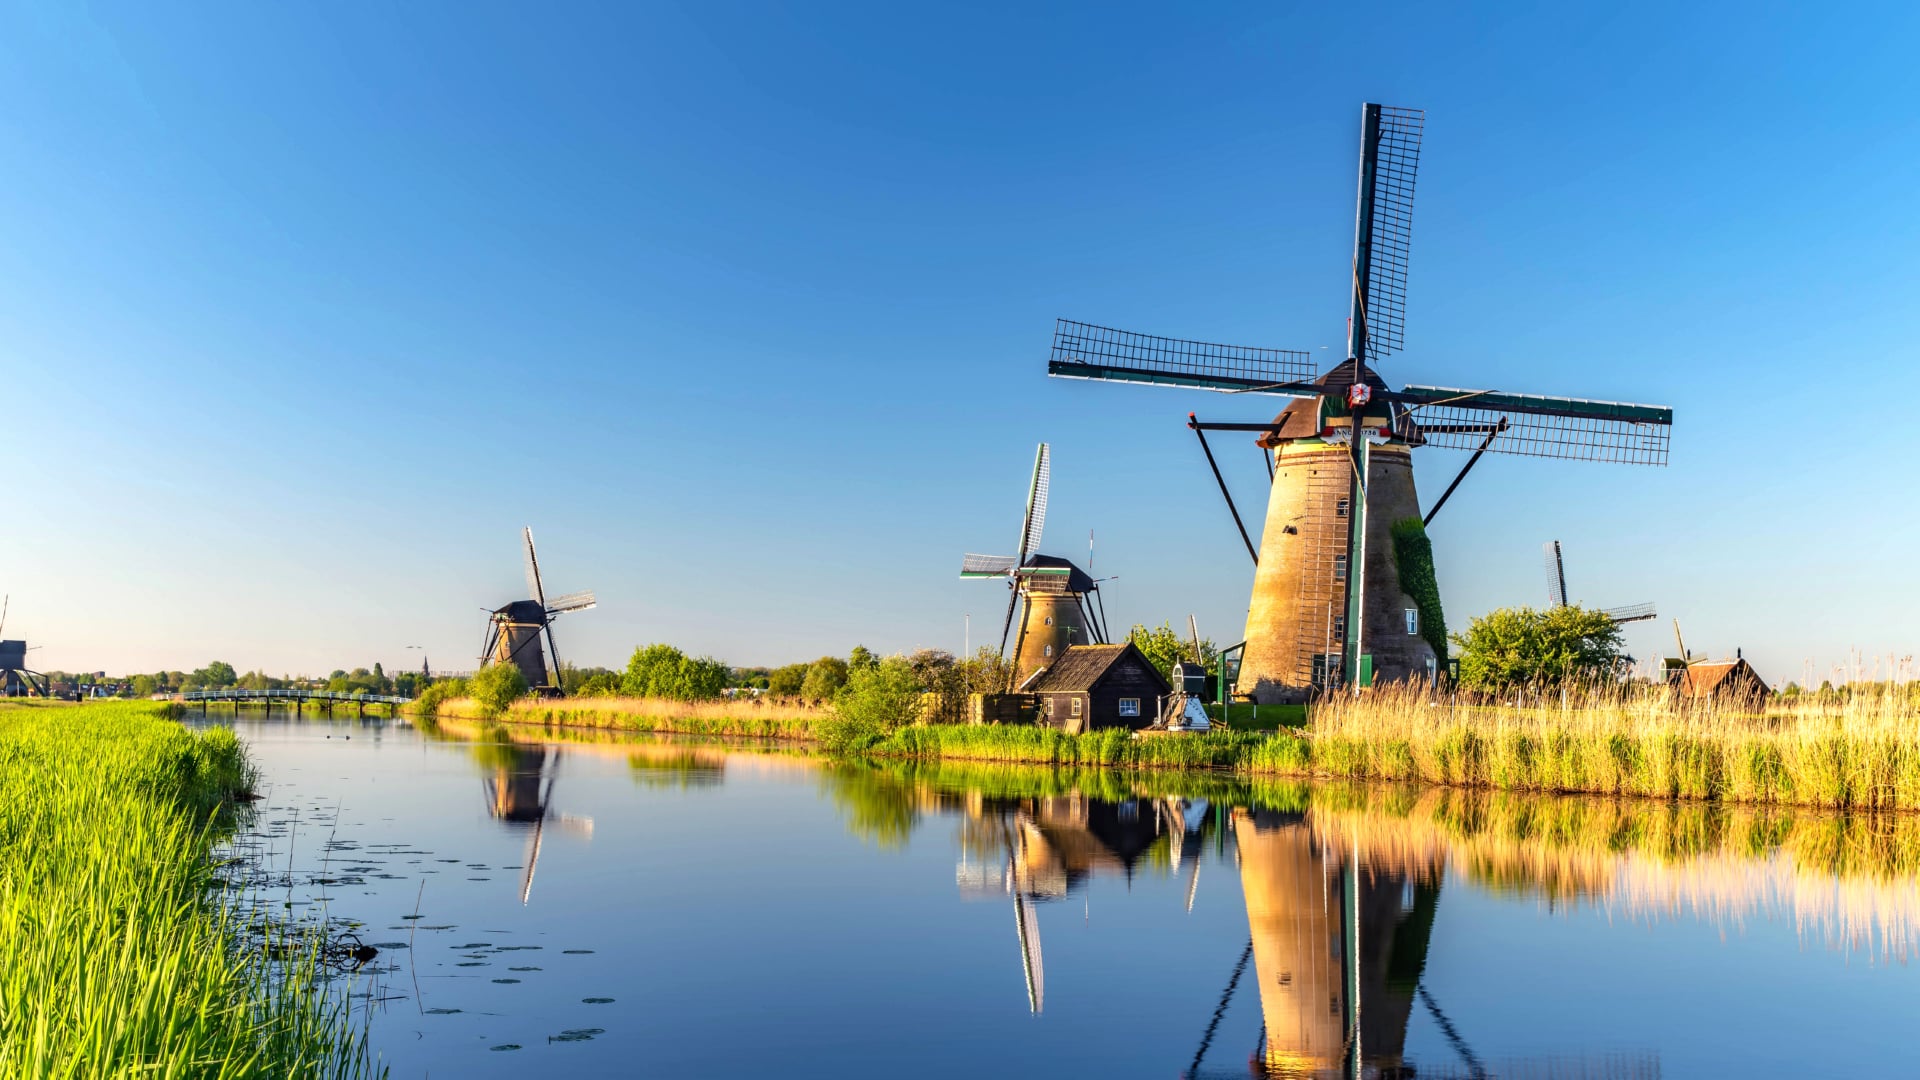 Windmills at Kinderdijk at 1280 x 960 size wallpapers HD quality